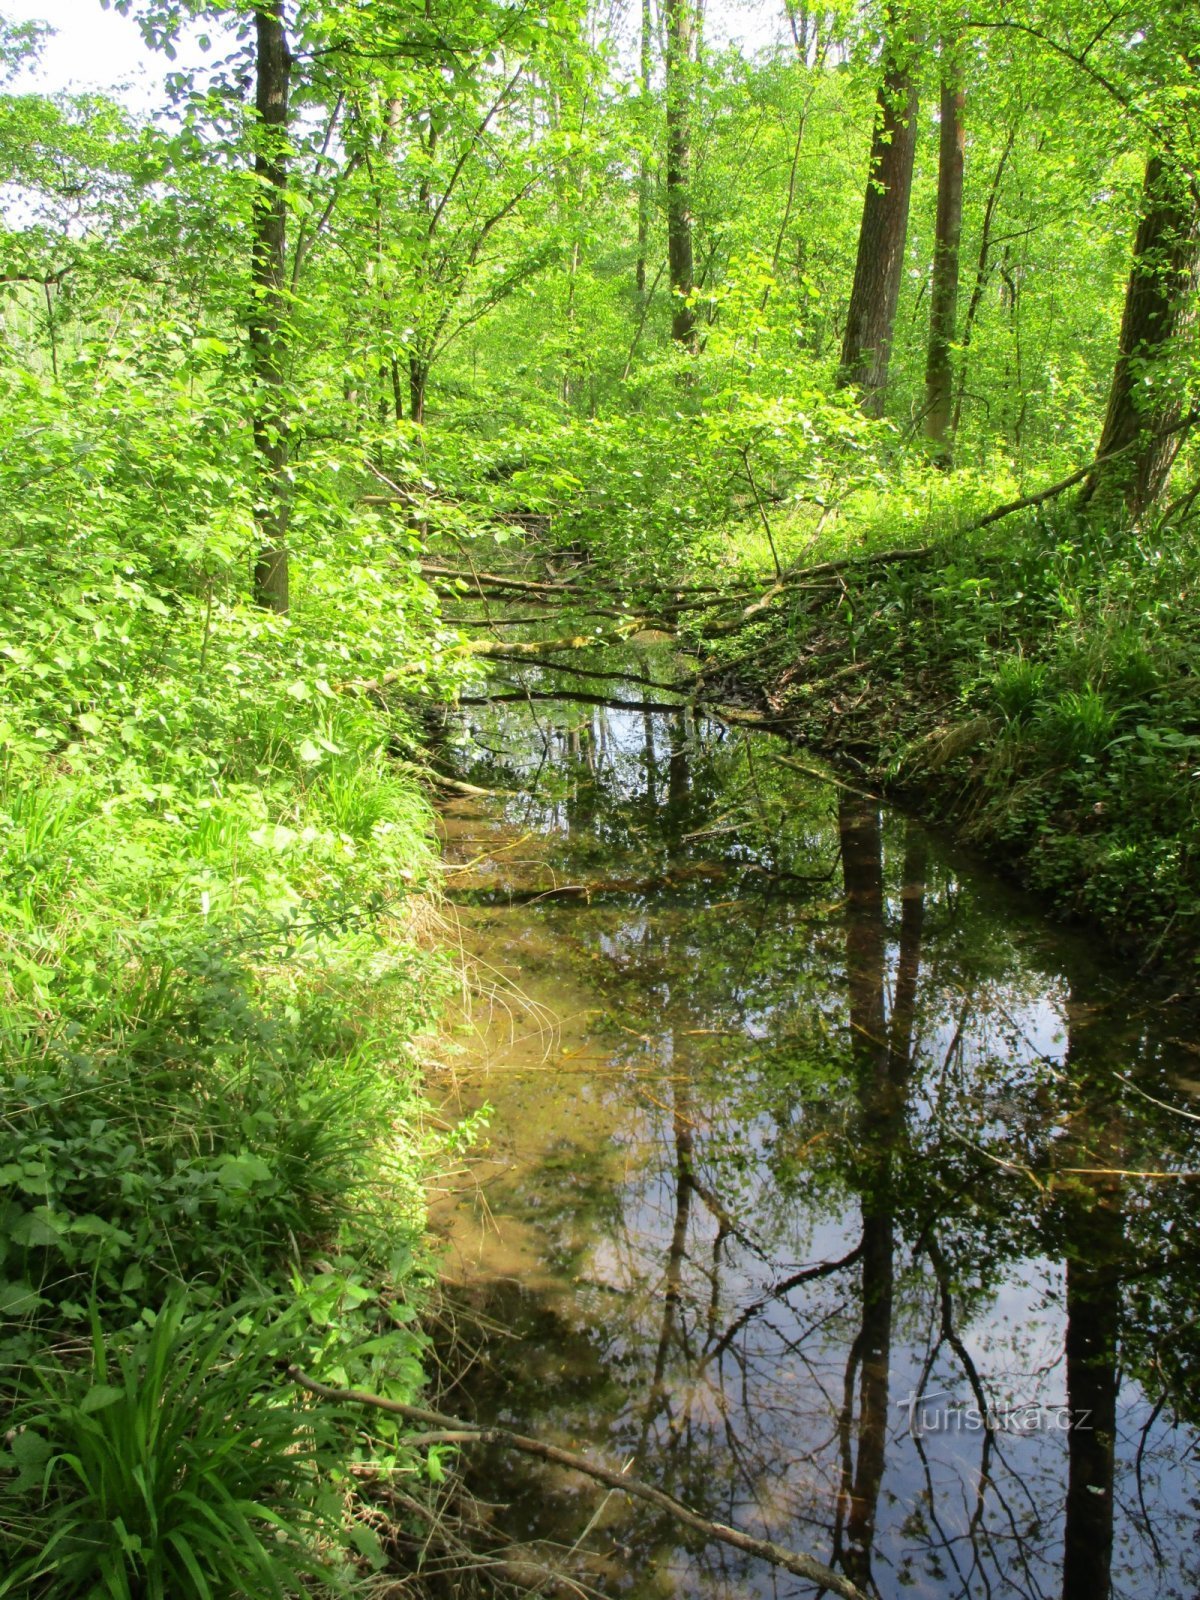 Ανώνυμος παραπόταμος του ρέματος Libníkovický στο Kaltouz (Černilov, 11.5.2020/XNUMX/XNUMX)